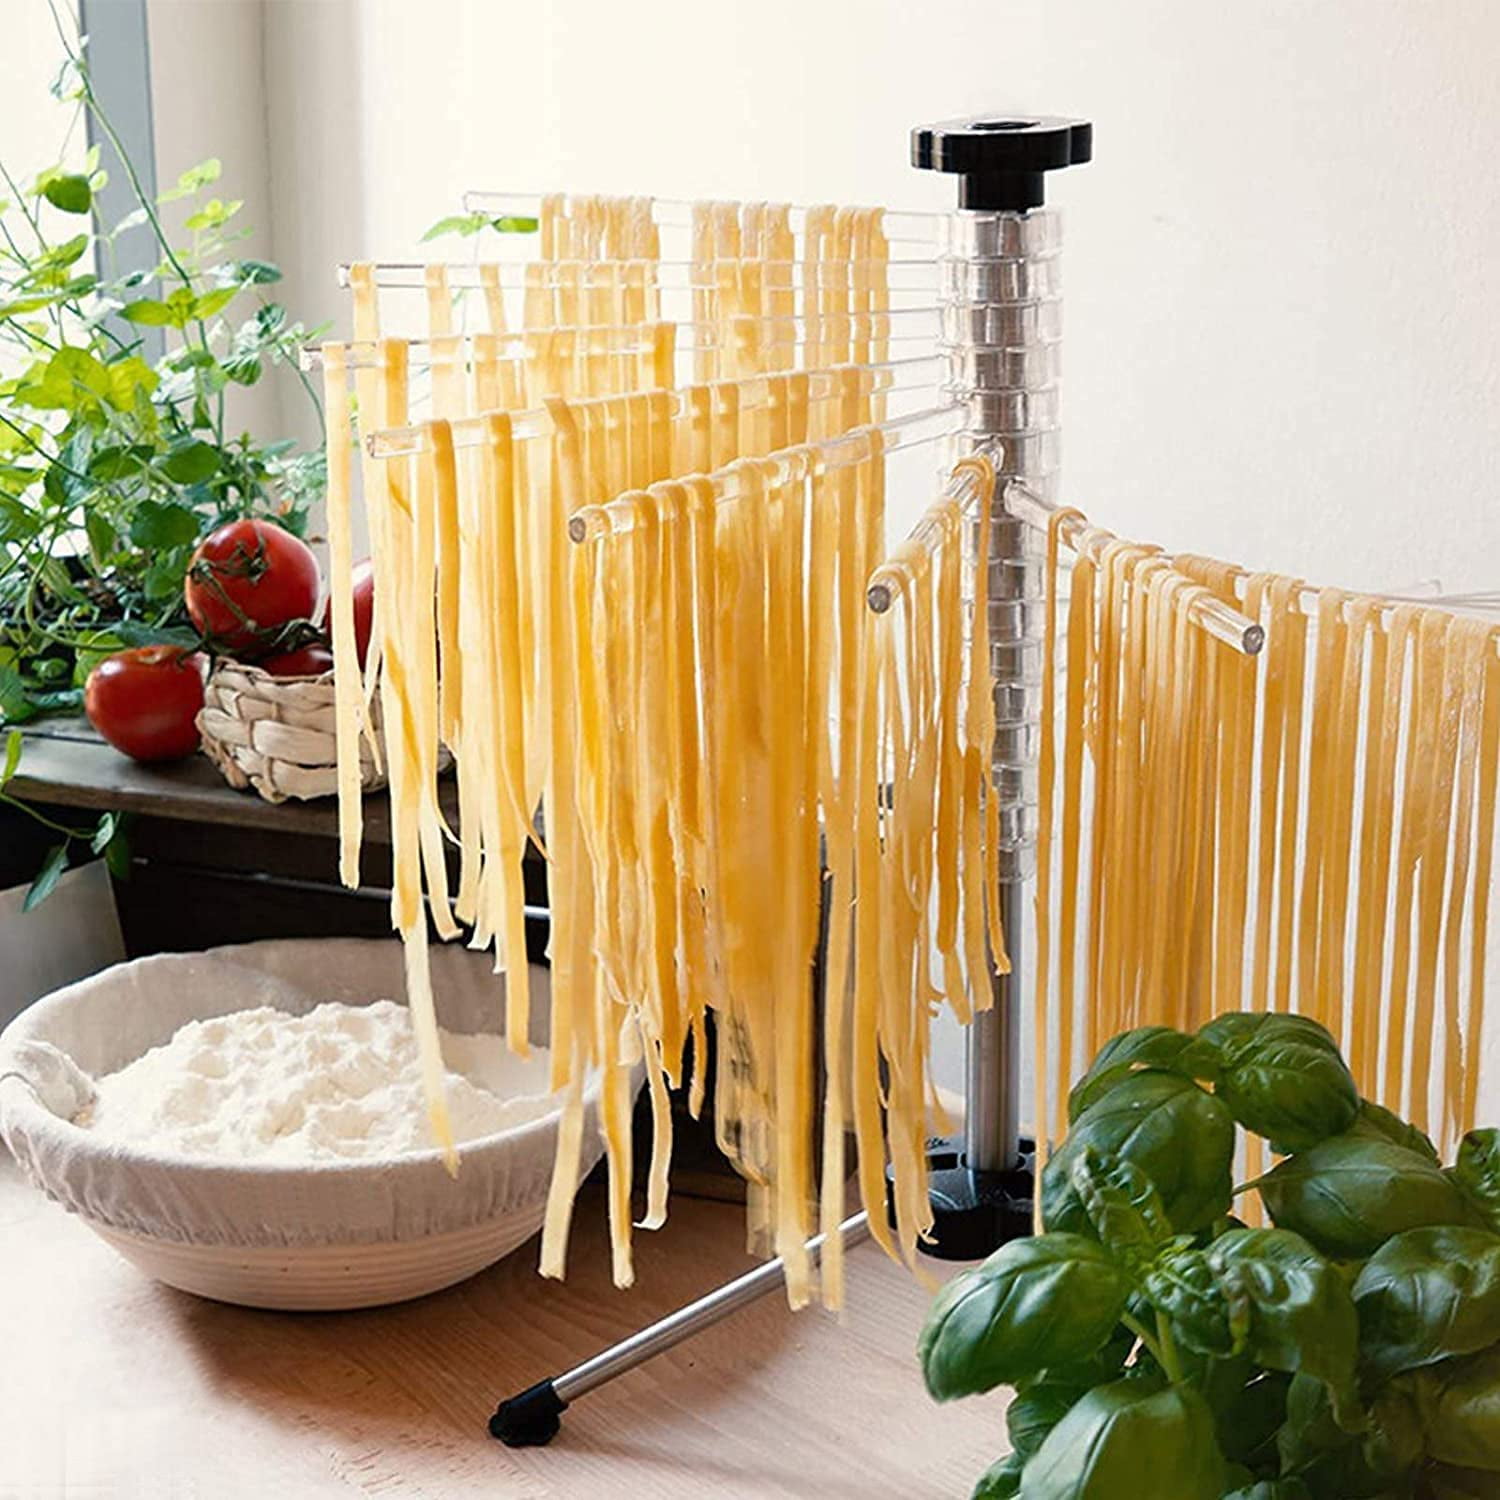 My DIY Pasta drying rack : r/pasta